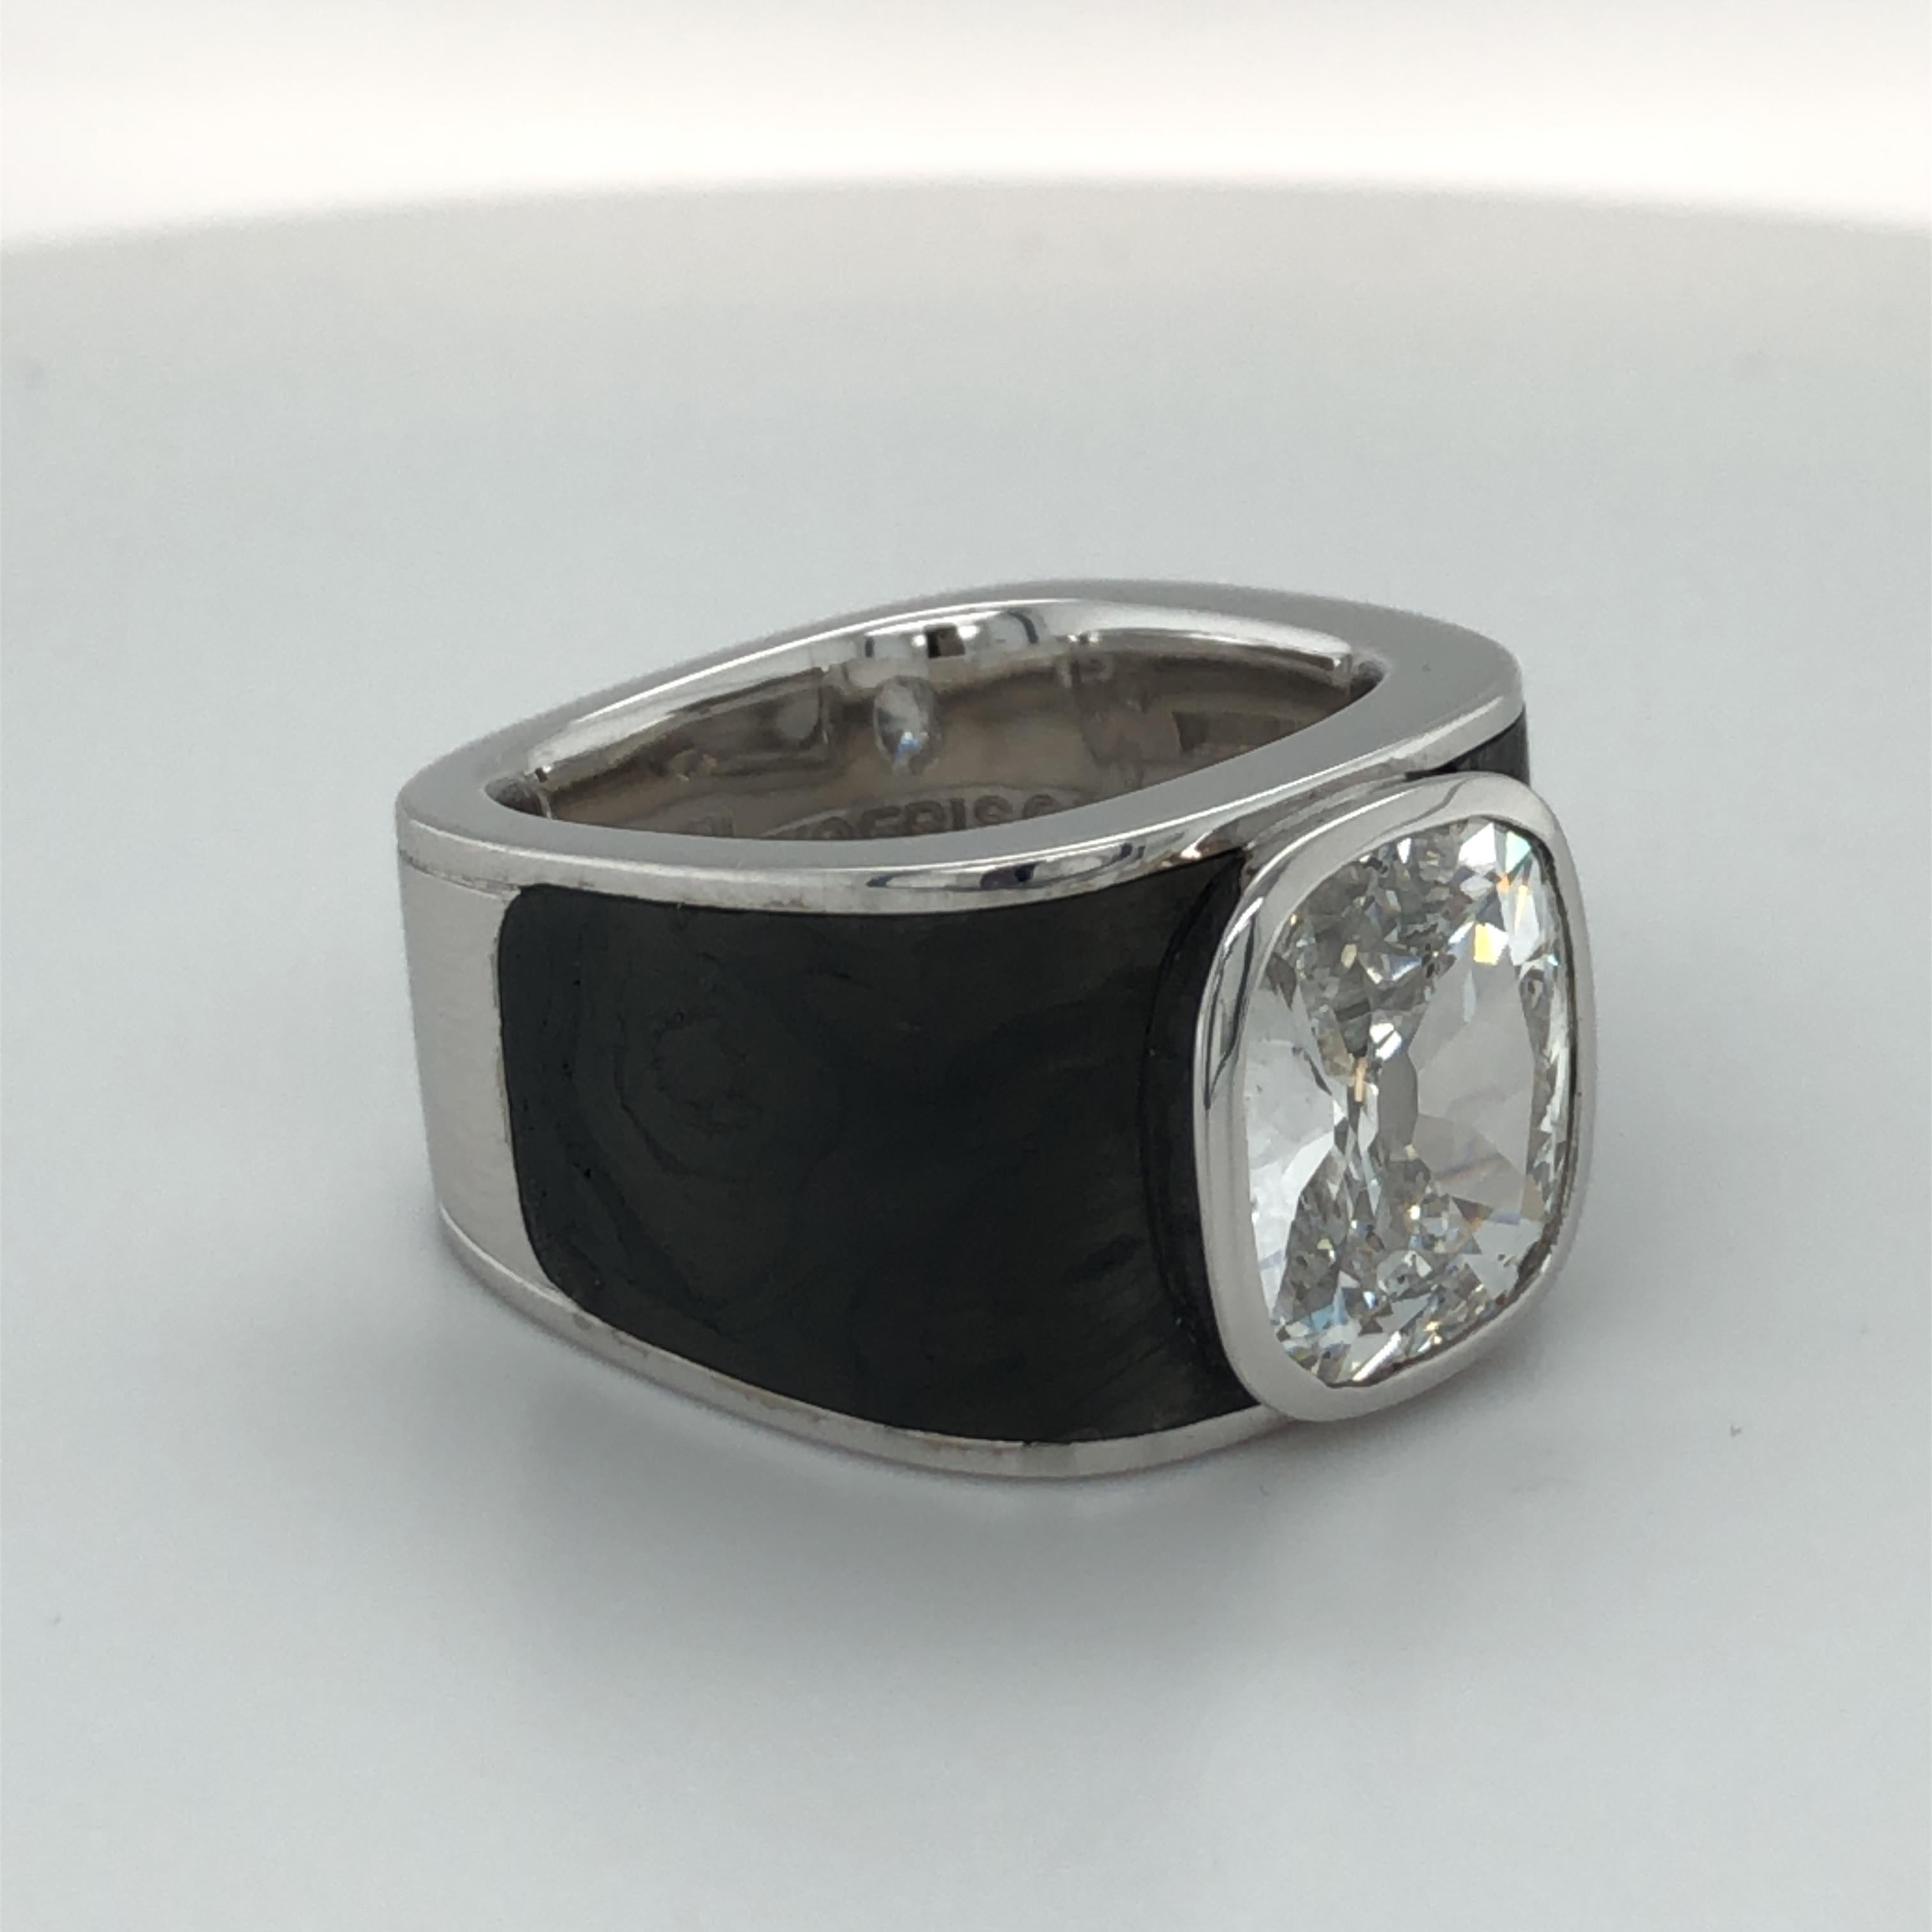 Binder Moerisch 3.41 Carat Diamond Ring in 18 Karat White Gold and Carbon 1